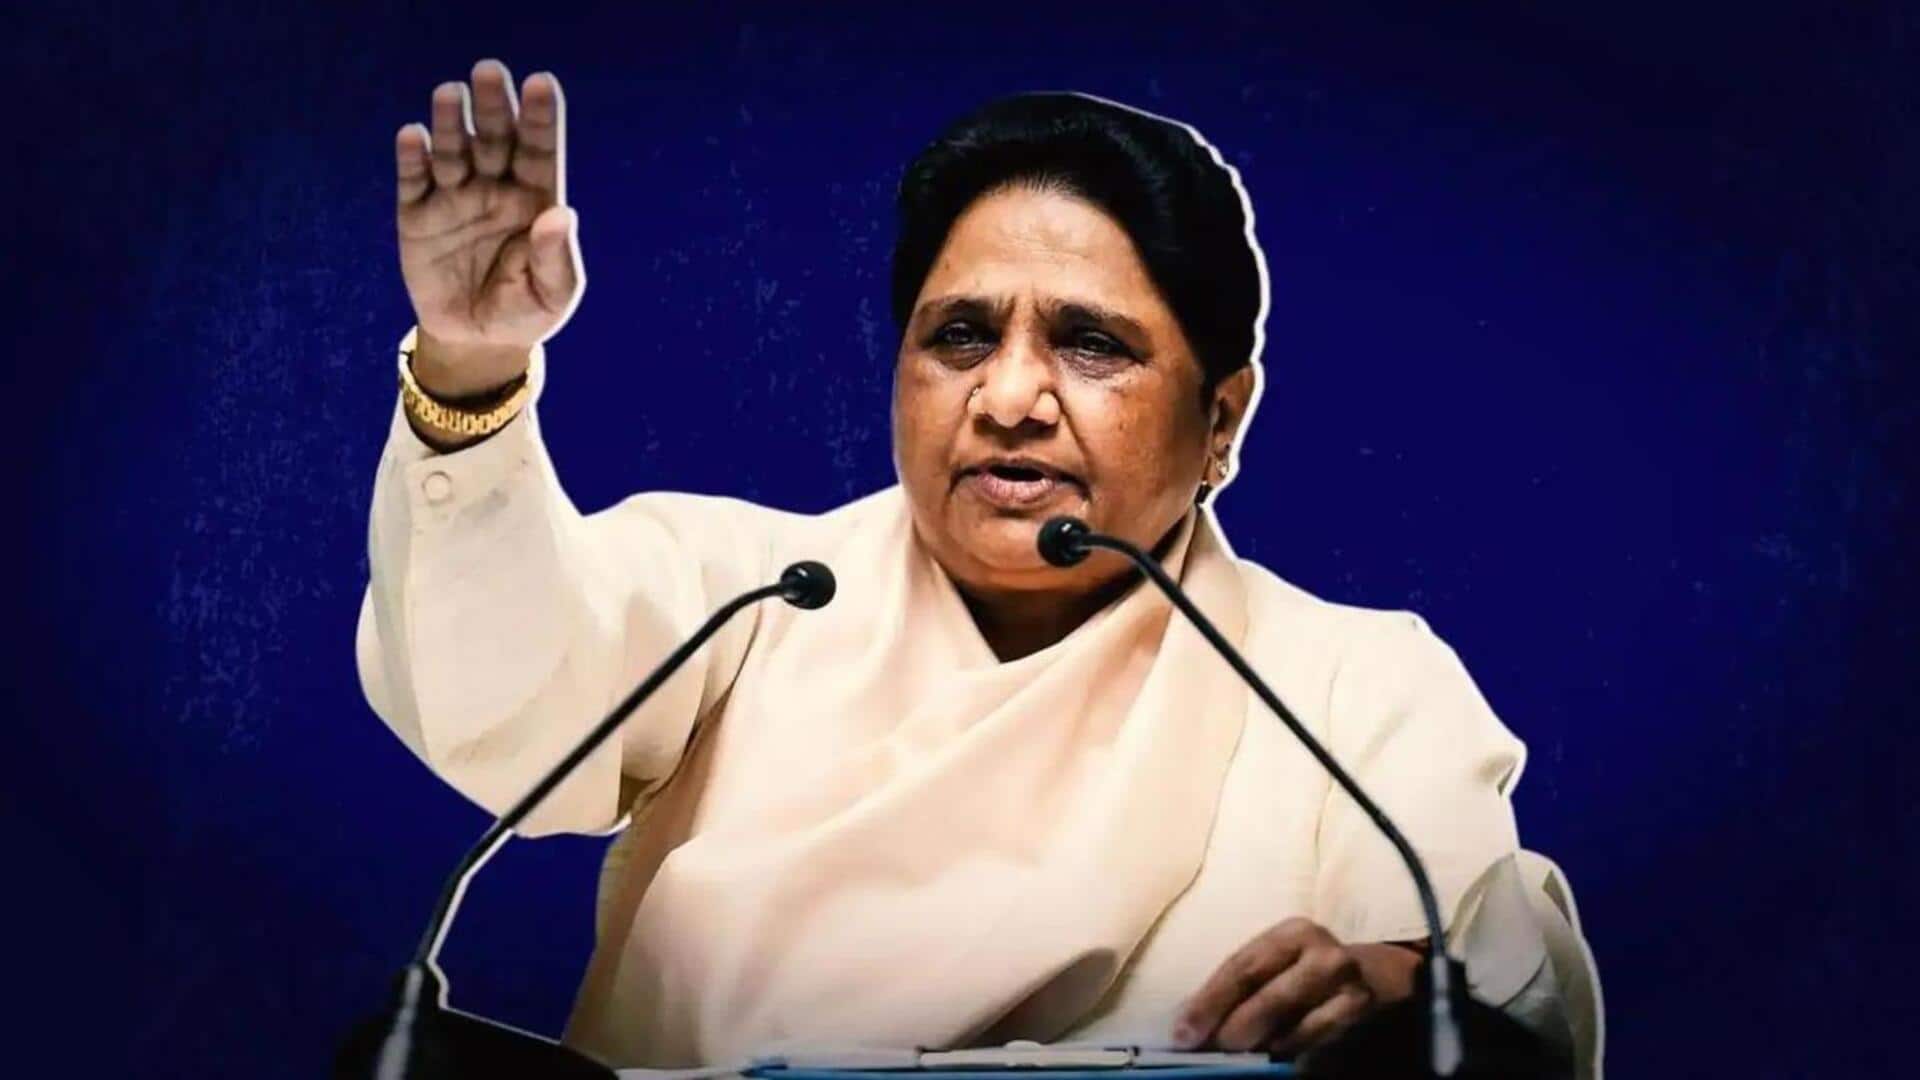 BSP's Mayawati names nephew Akash Anand as political successor: Report